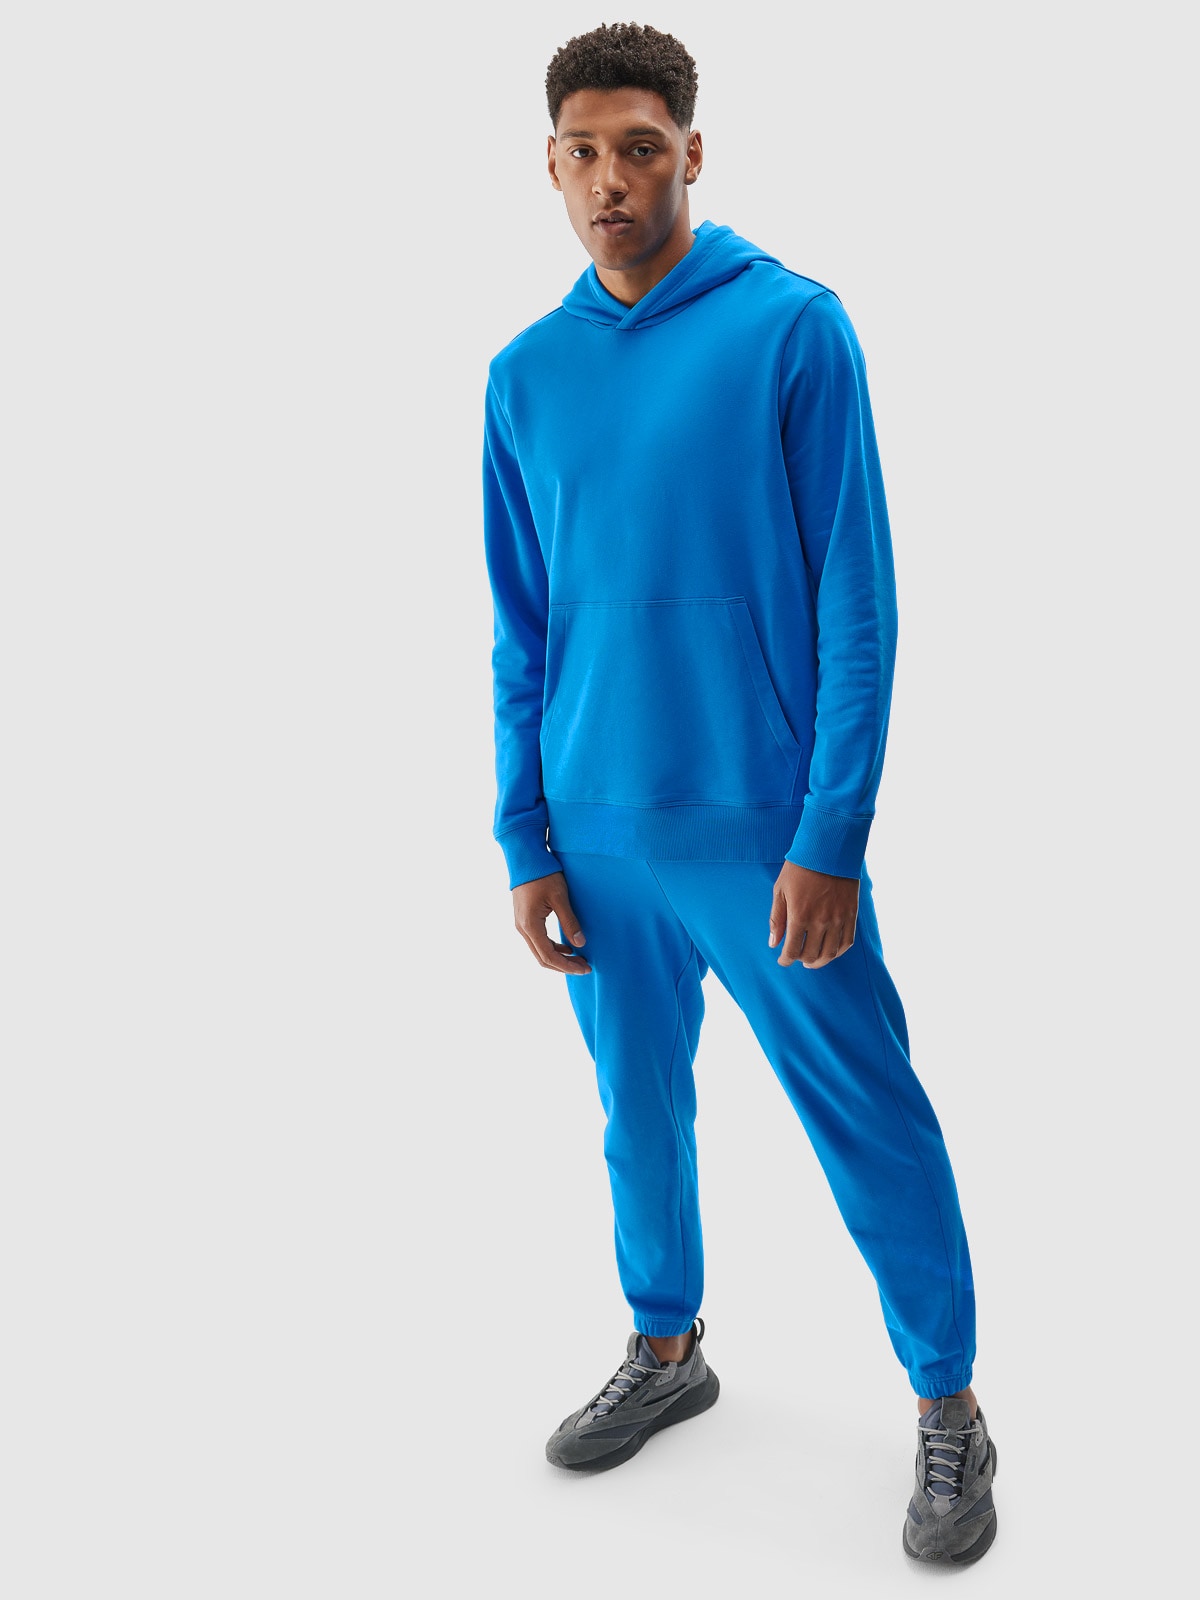 Pánské tepláky typu jogger s organickou bavlnou - modré